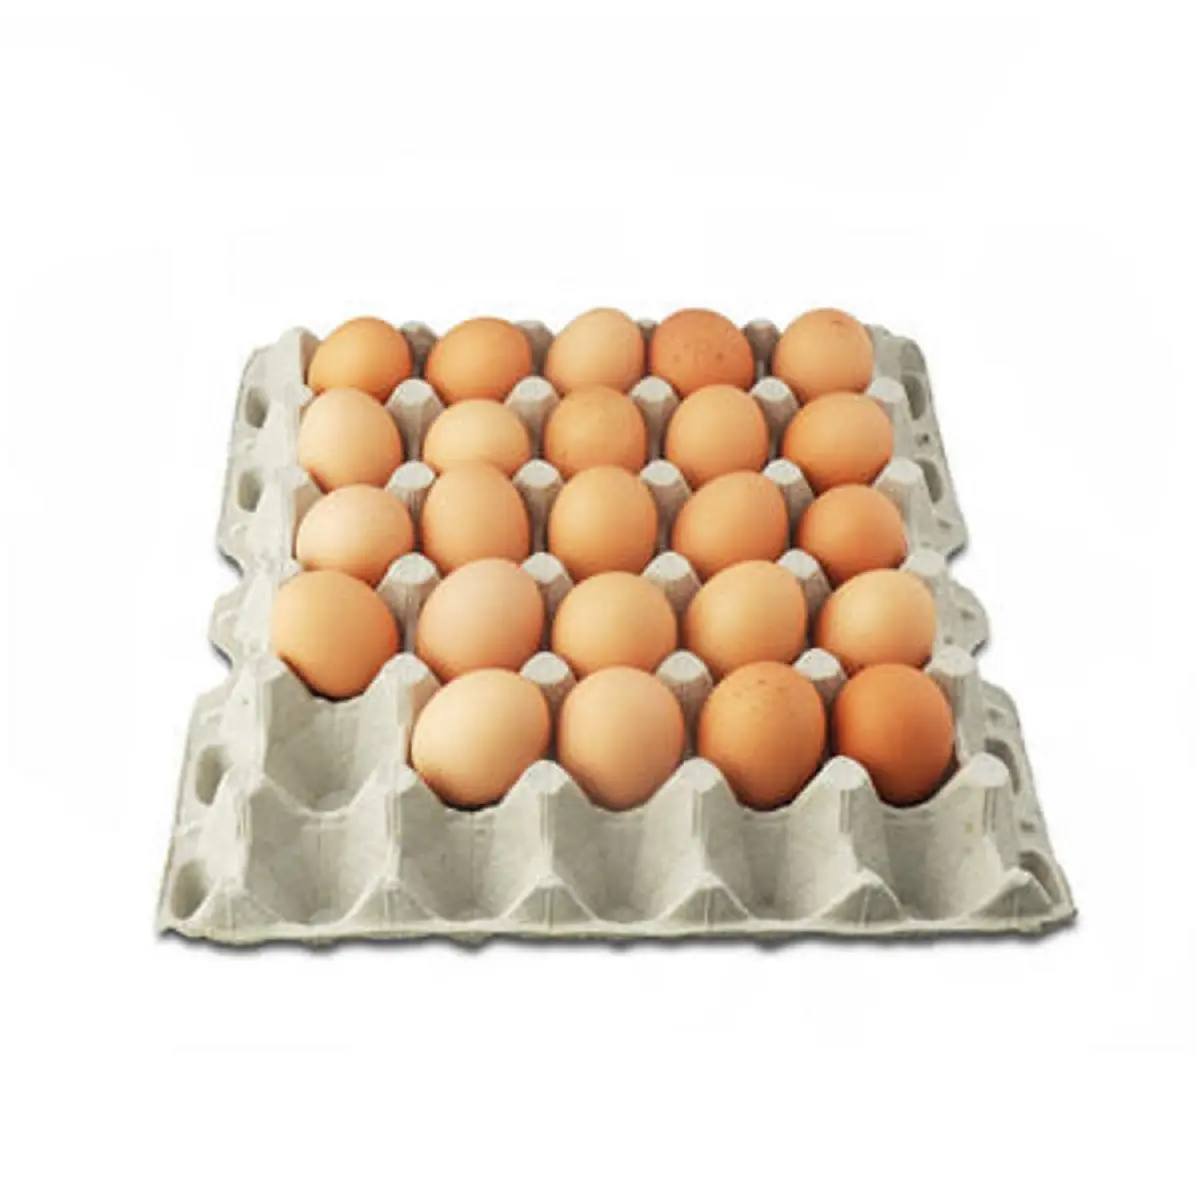 新鮮なチキンテーブルの卵と施肥された孵化卵、白と茶色の卵-